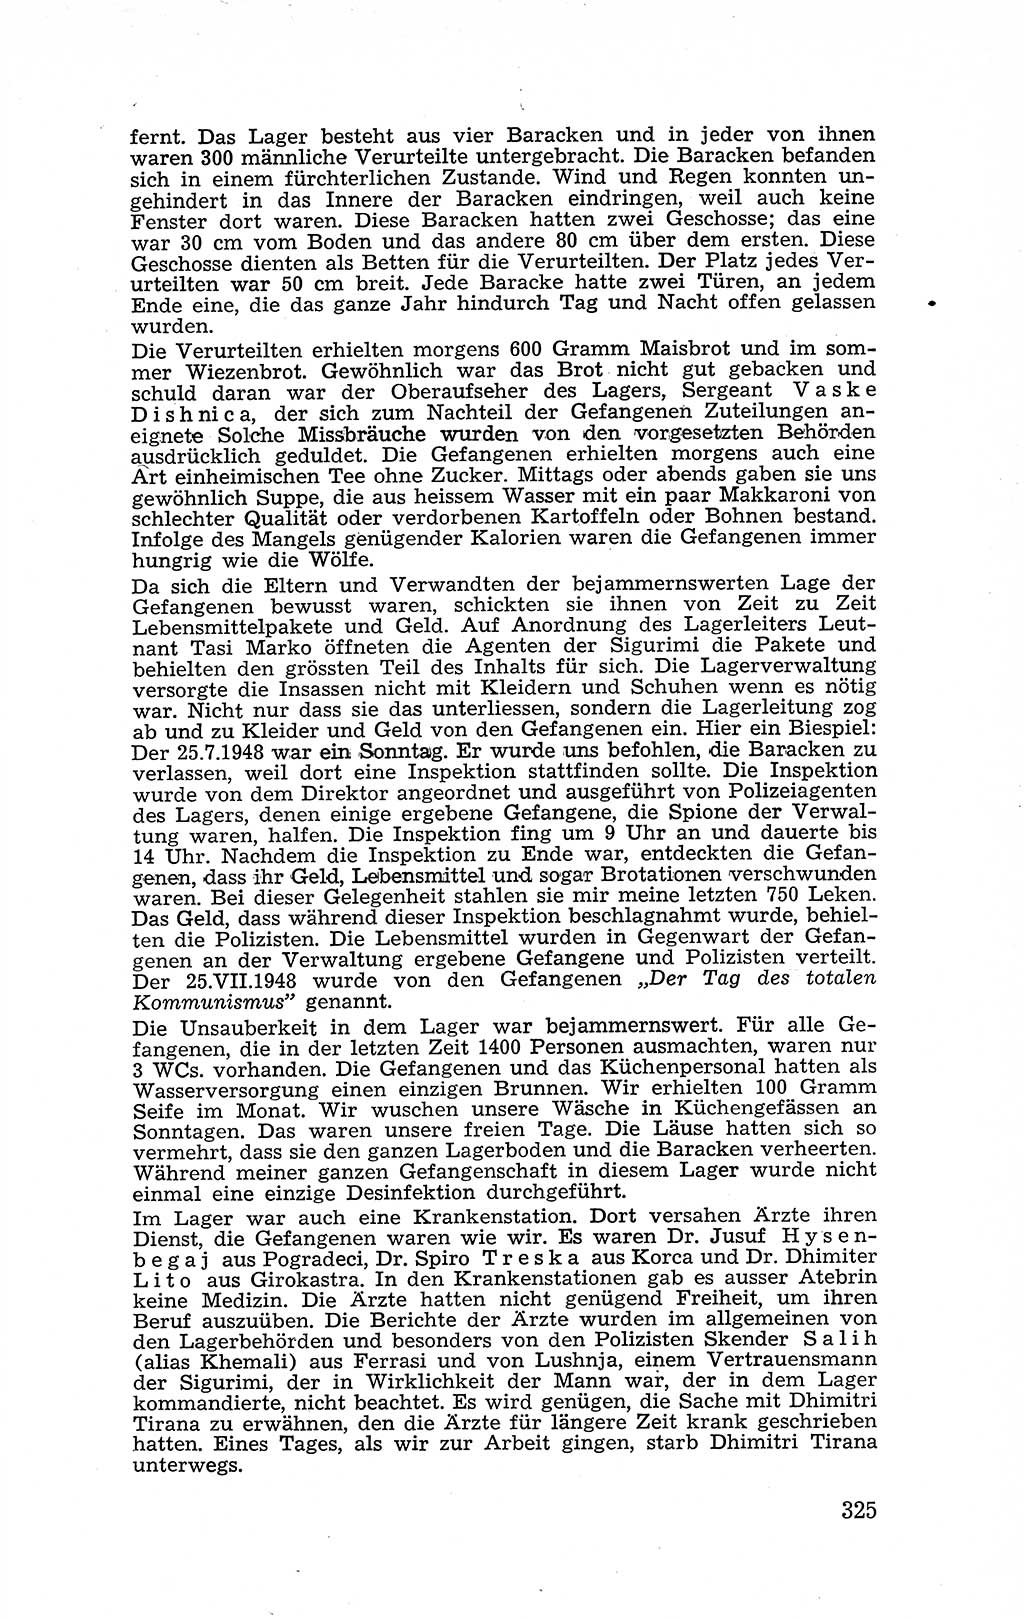 Recht in Fesseln, Dokumente, Internationale Juristen-Kommission [Bundesrepublik Deutschland (BRD)] 1955, Seite 325 (R. Dok. IJK BRD 1955, S. 325)